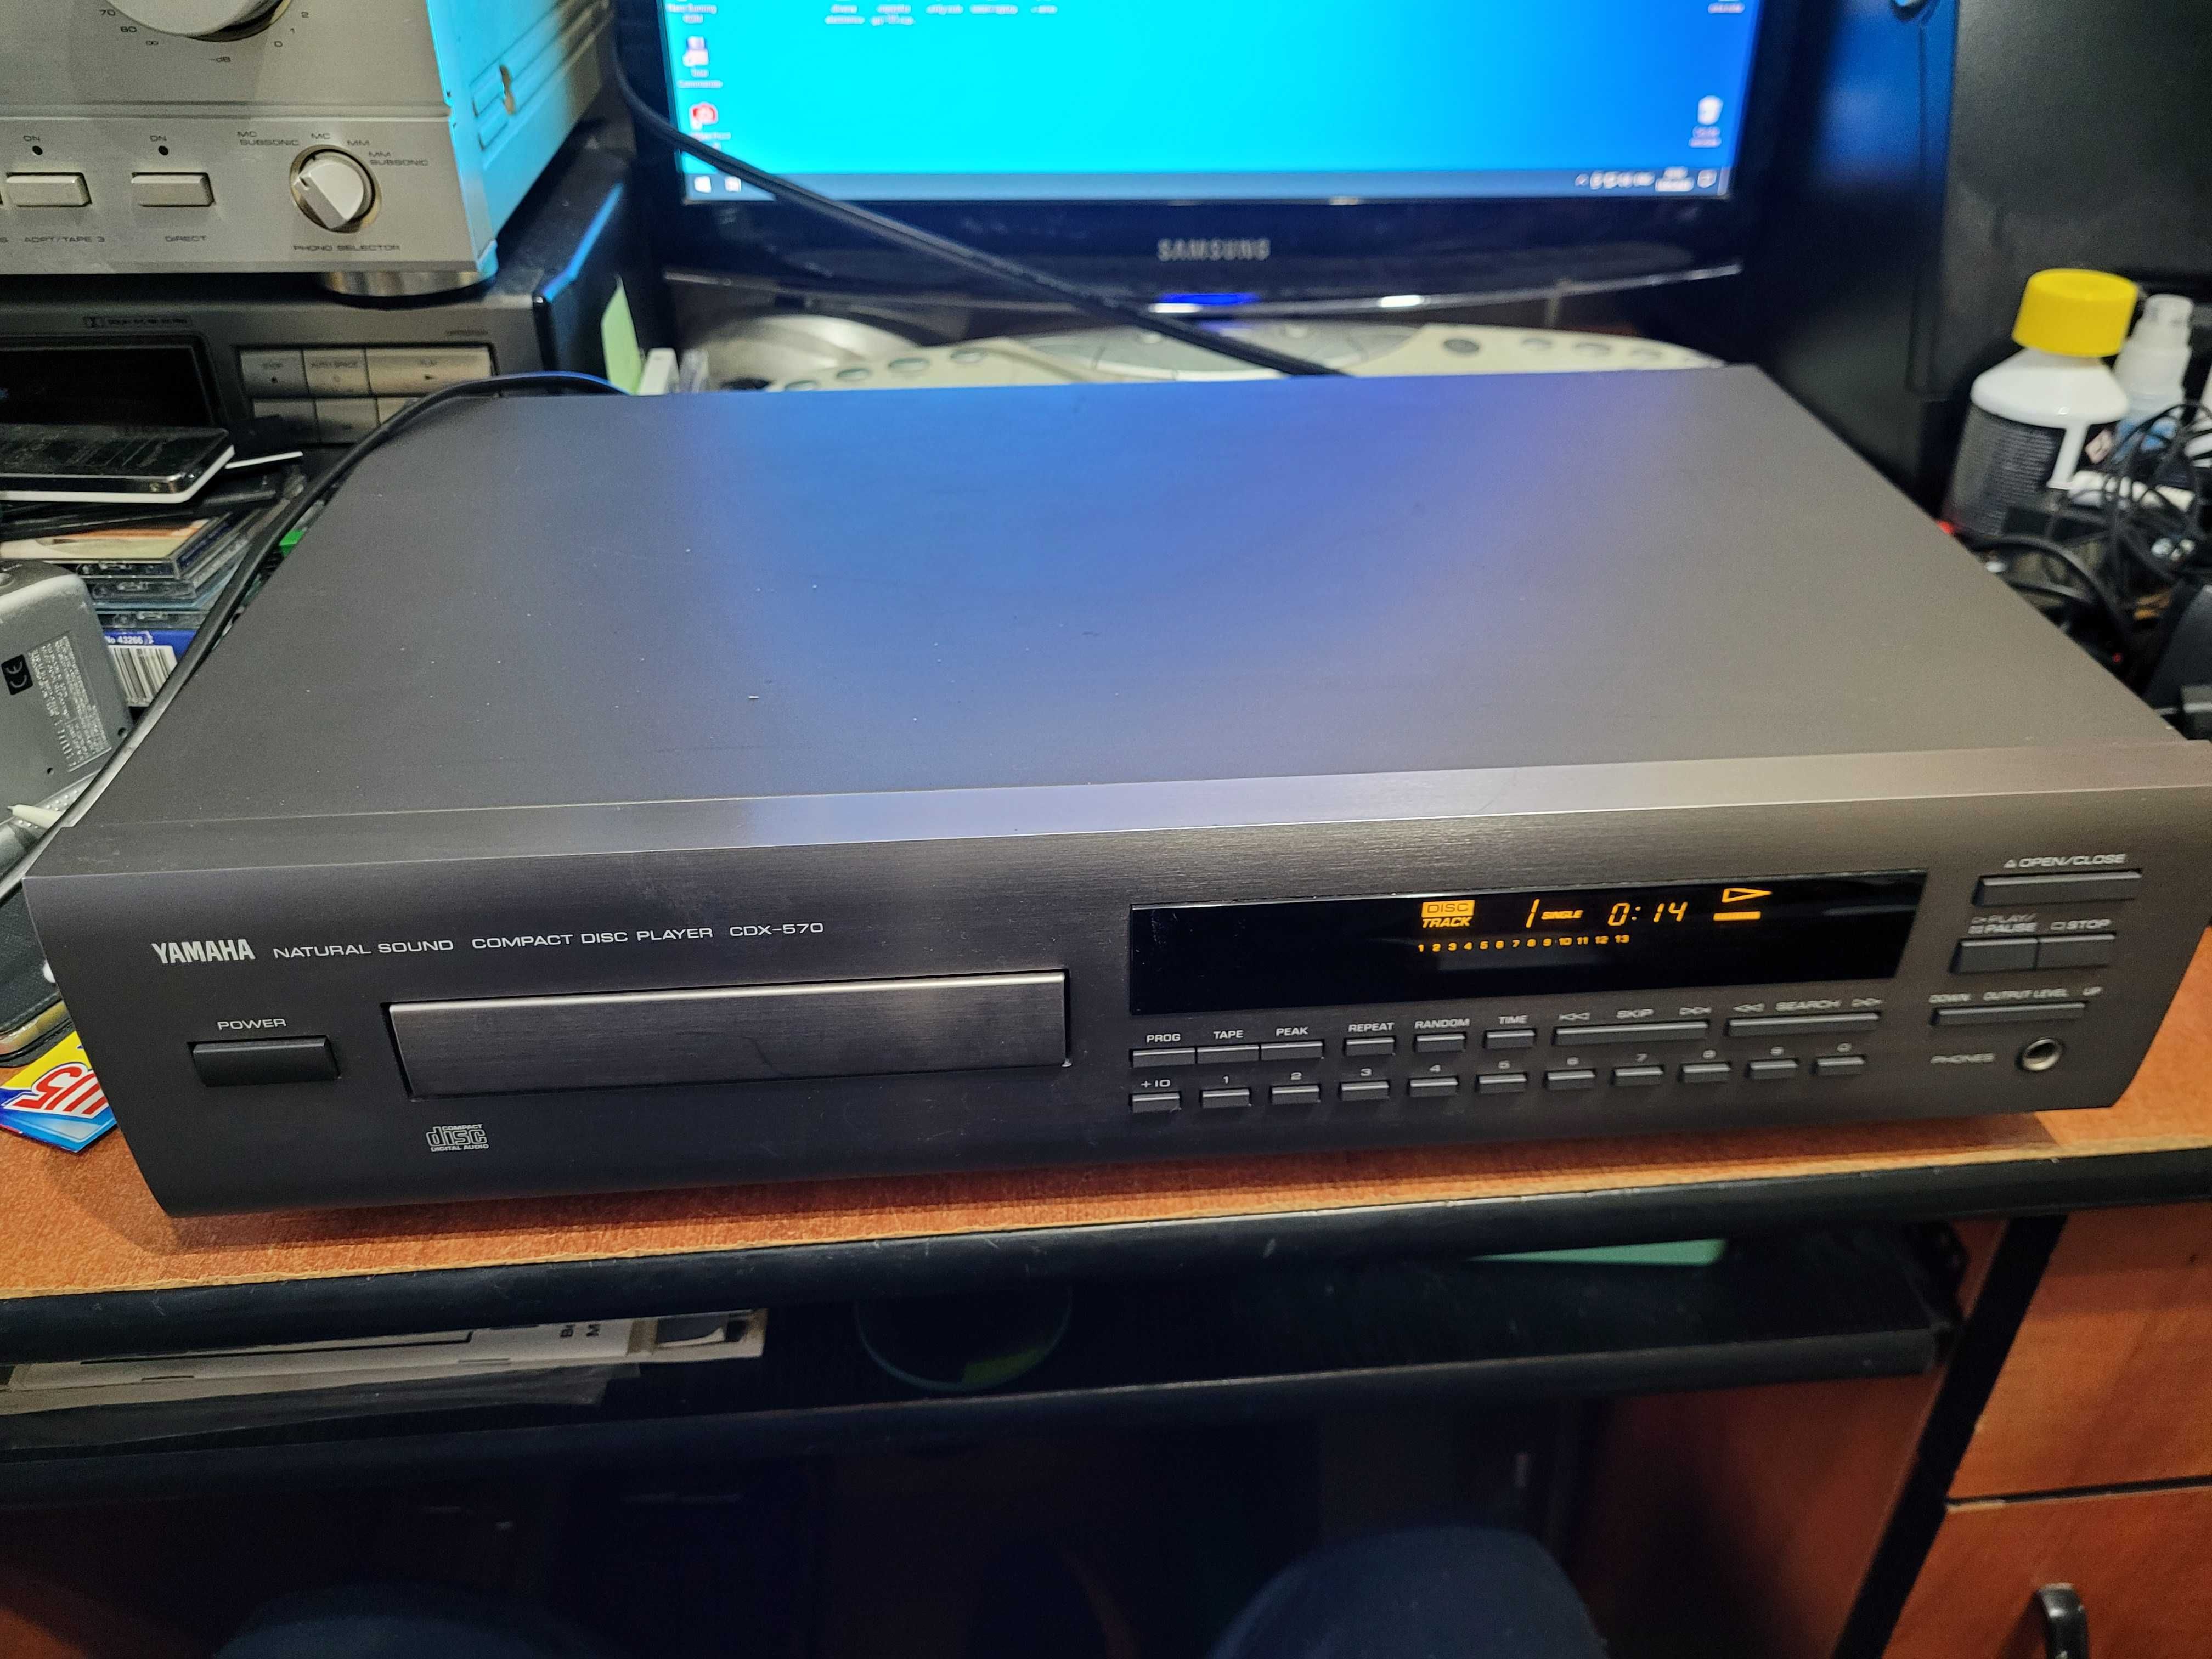 Yamaha CDX-570 compact disc player